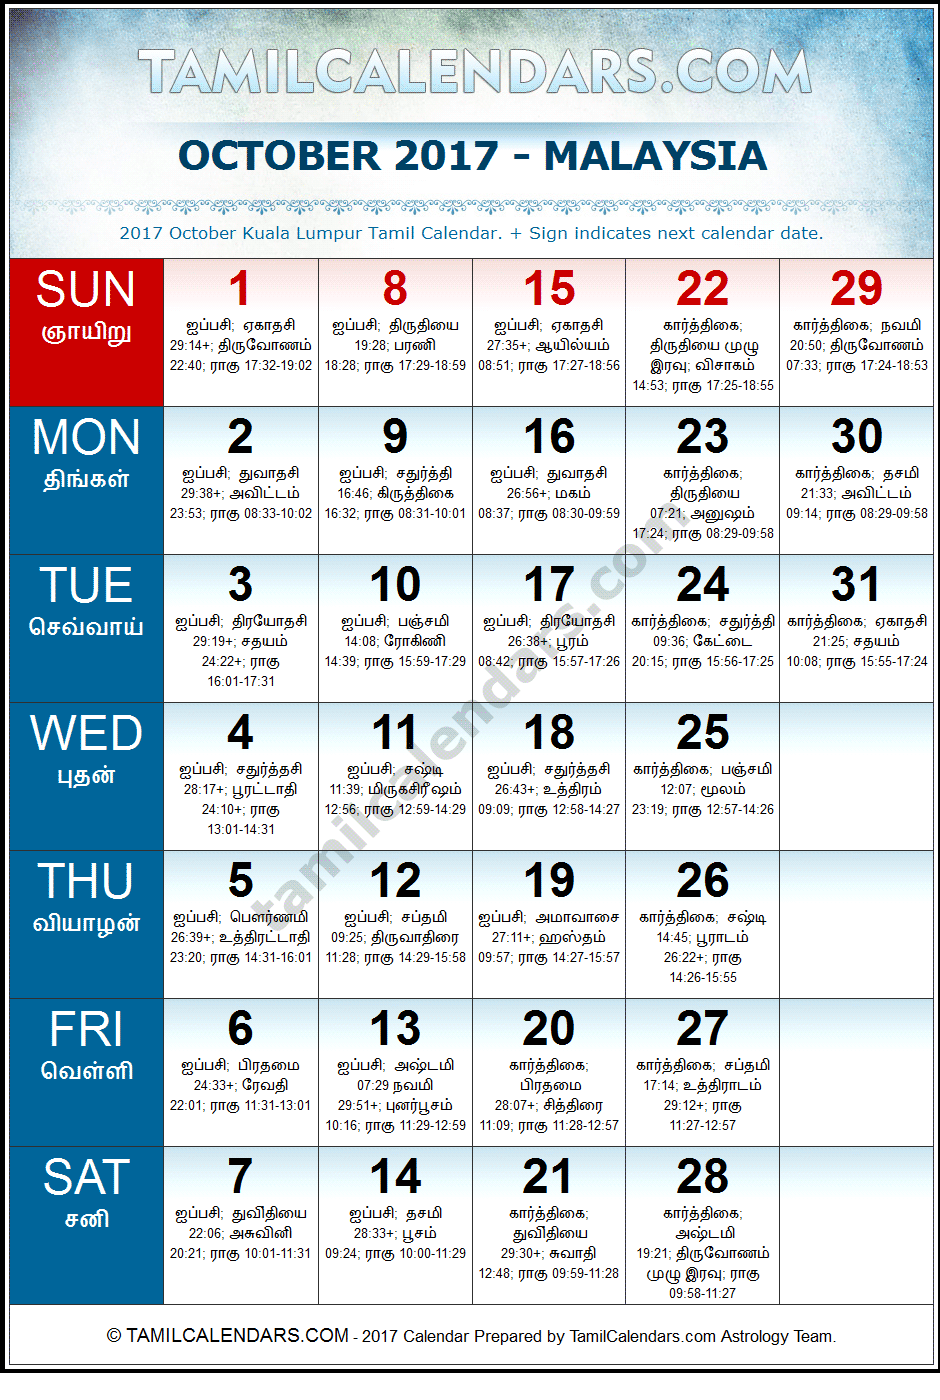 October 2017 Tamil Calendar for Malaysia (Kuala Lumpur)